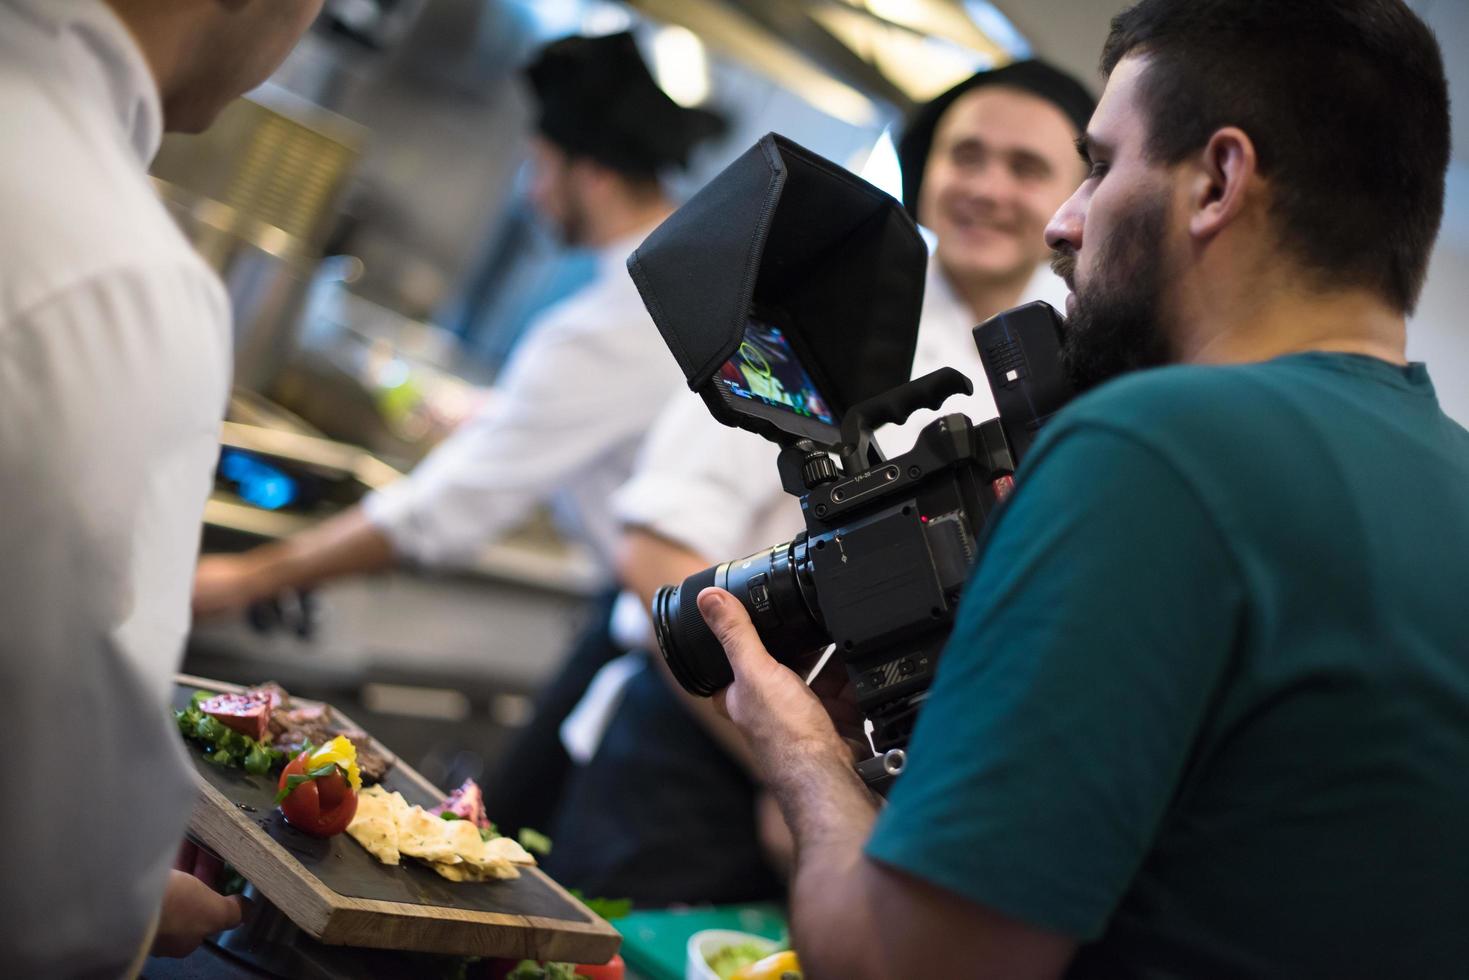 videograaf opname terwijl team kookt en koks voorbereidingen treffen maaltijd foto